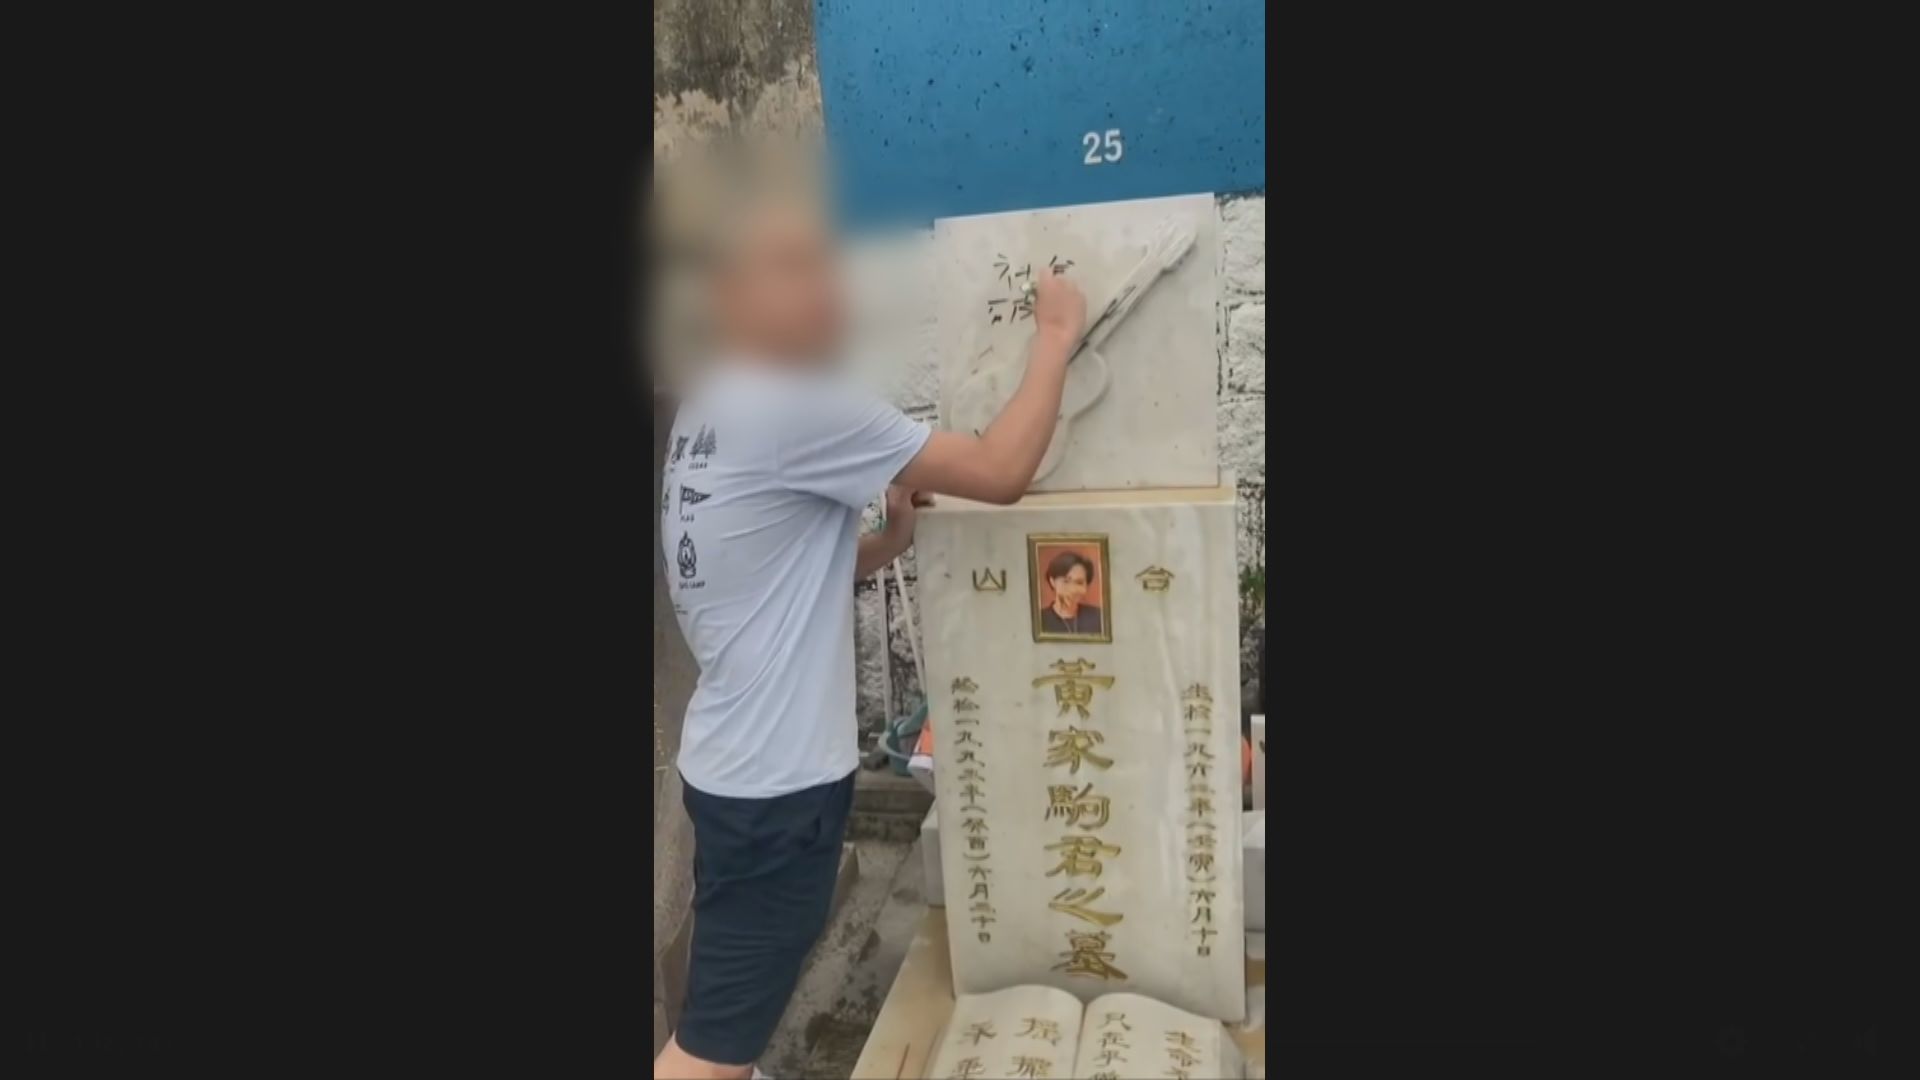 黃家駒墓碑遭塗污 兩名男子被捕